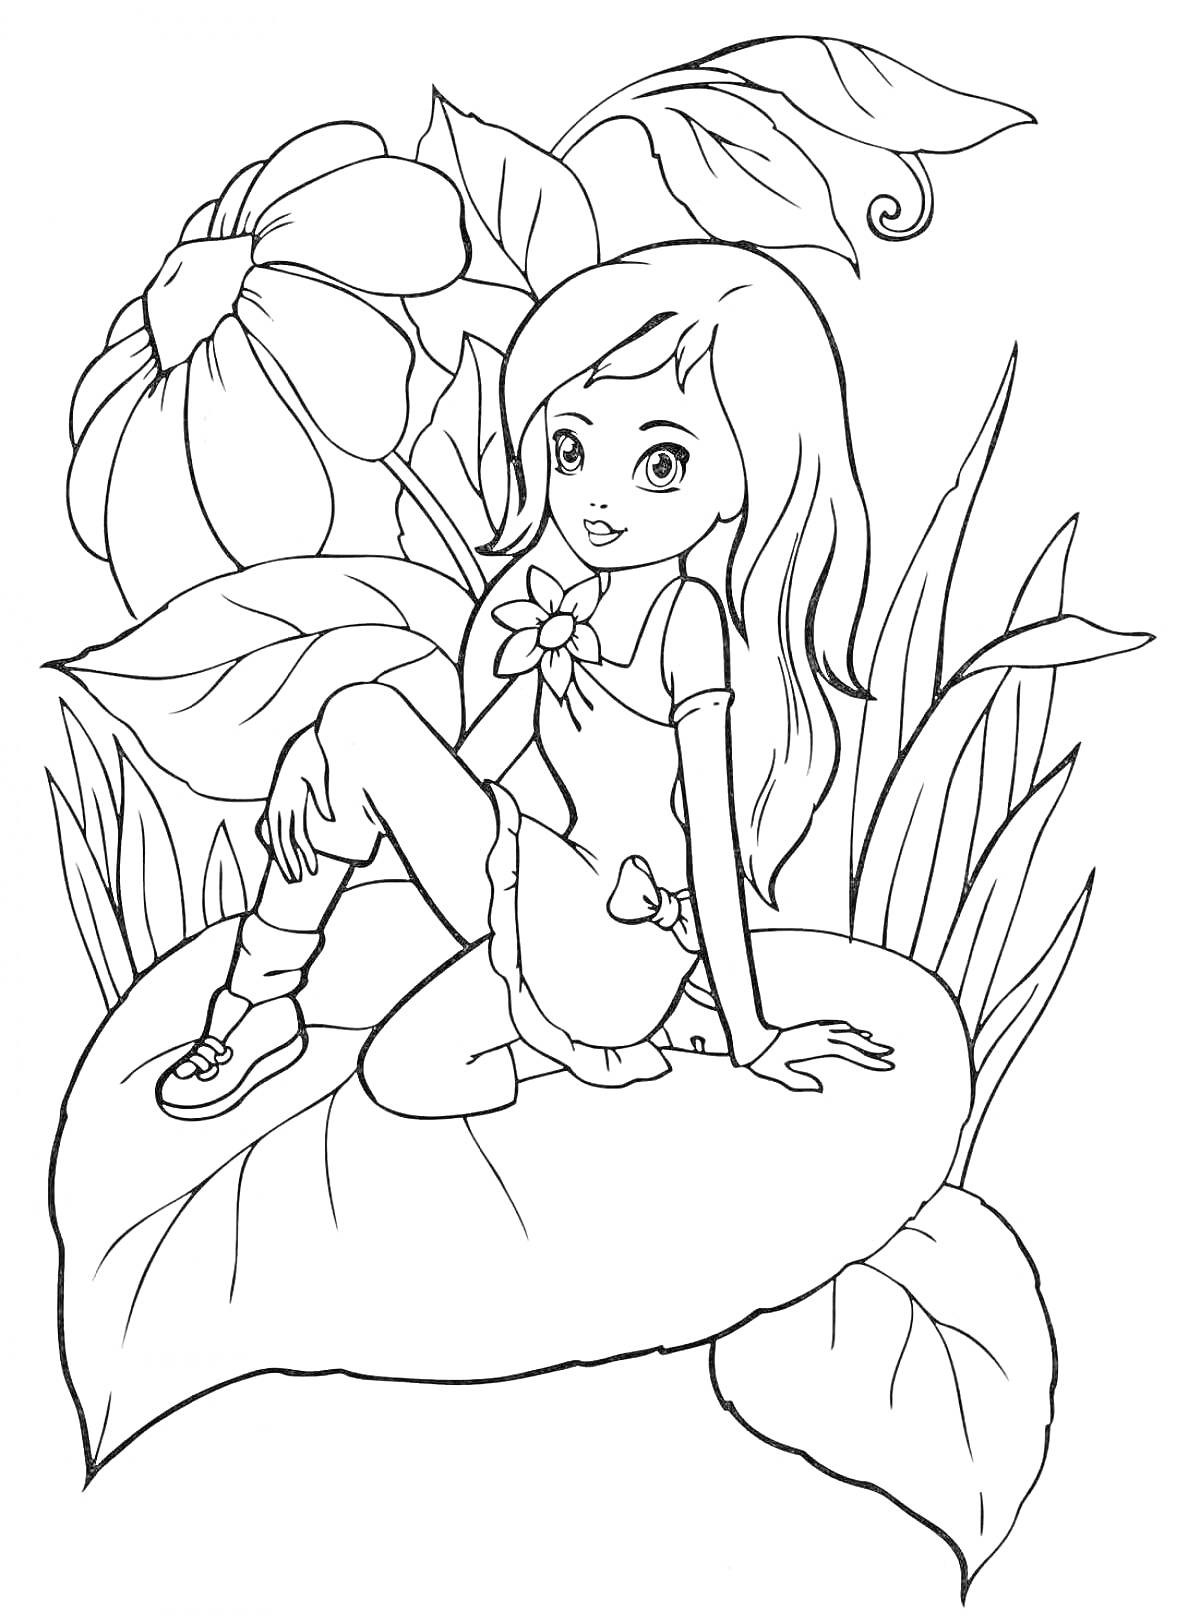 Раскраска Девочка Энчантимус сидит на большом листе среди больших цветов и листьев